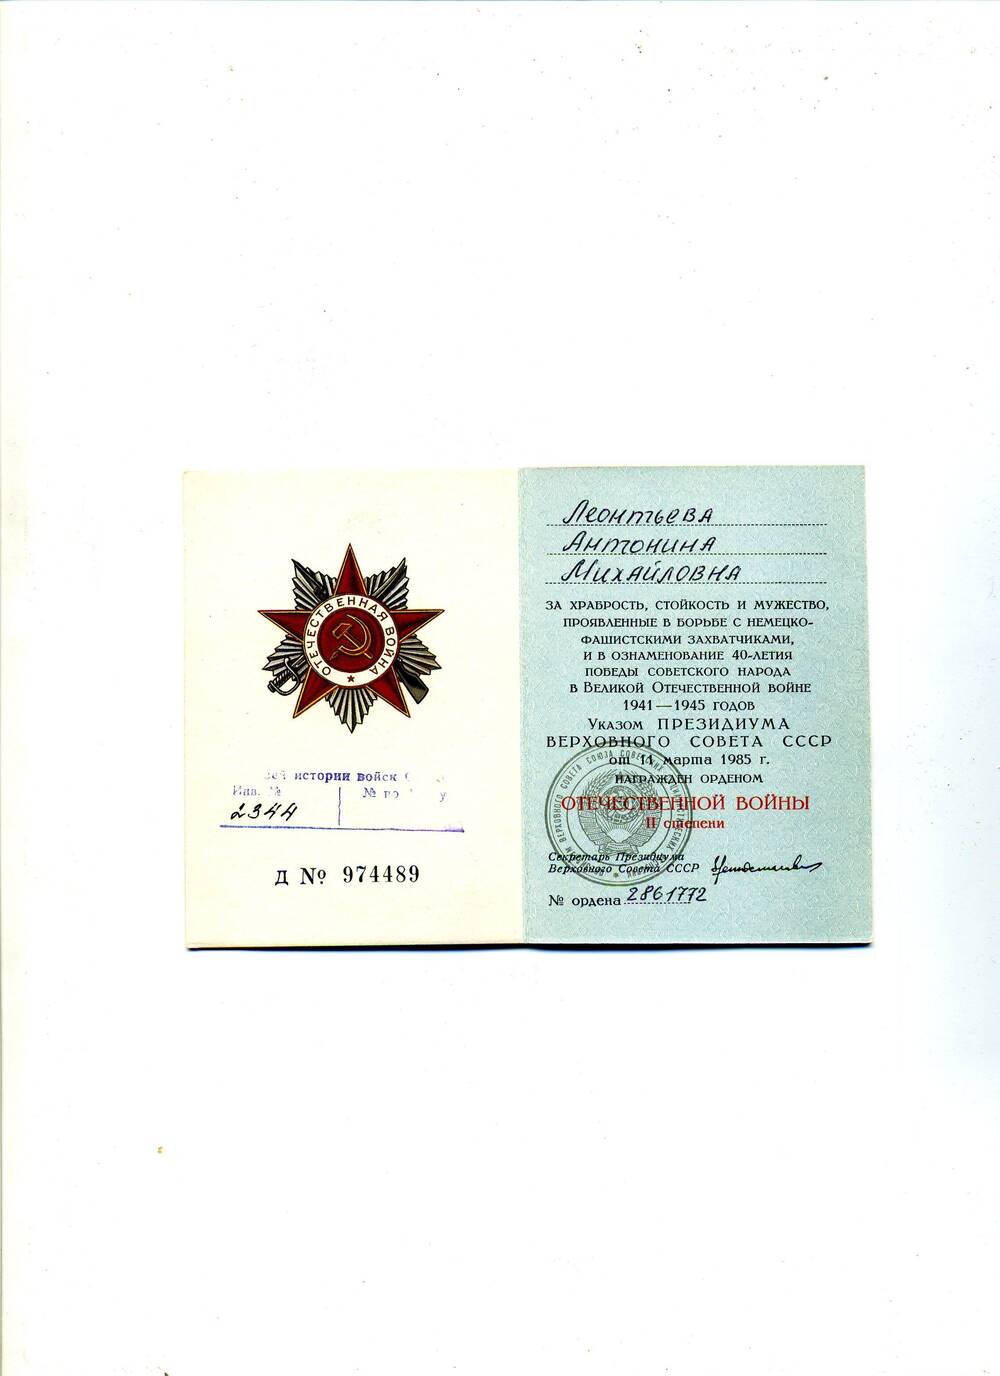 Орденская книжка к ордену Отечественной войны II степени Д № 974489 от 11 марта 1985 г. Леонтьевой А.М.